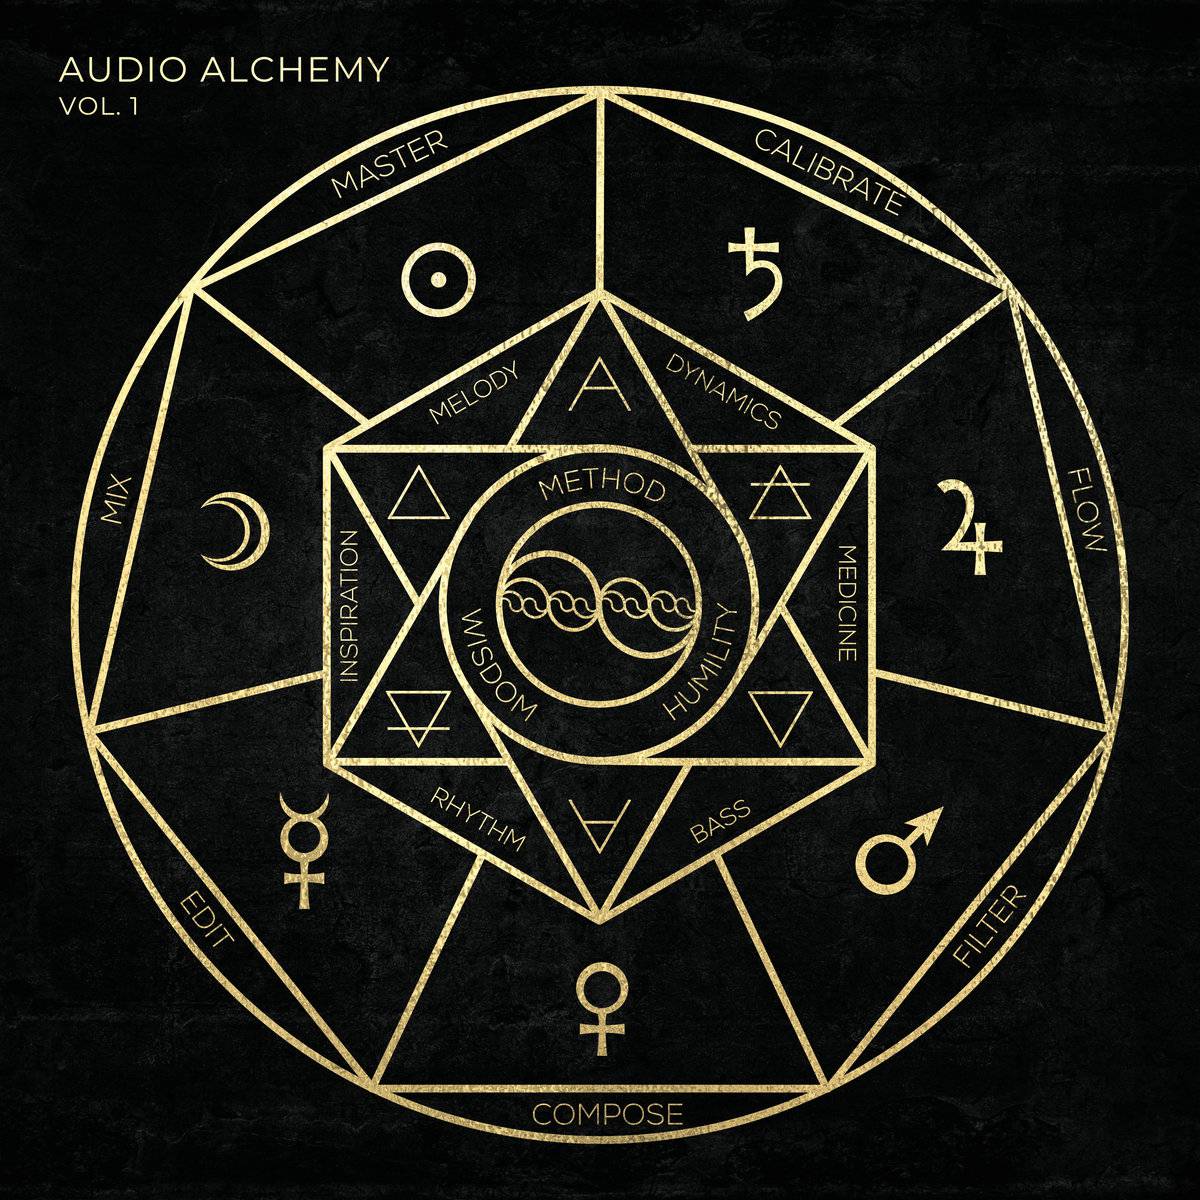 Audio Alchemy OM-90.1A